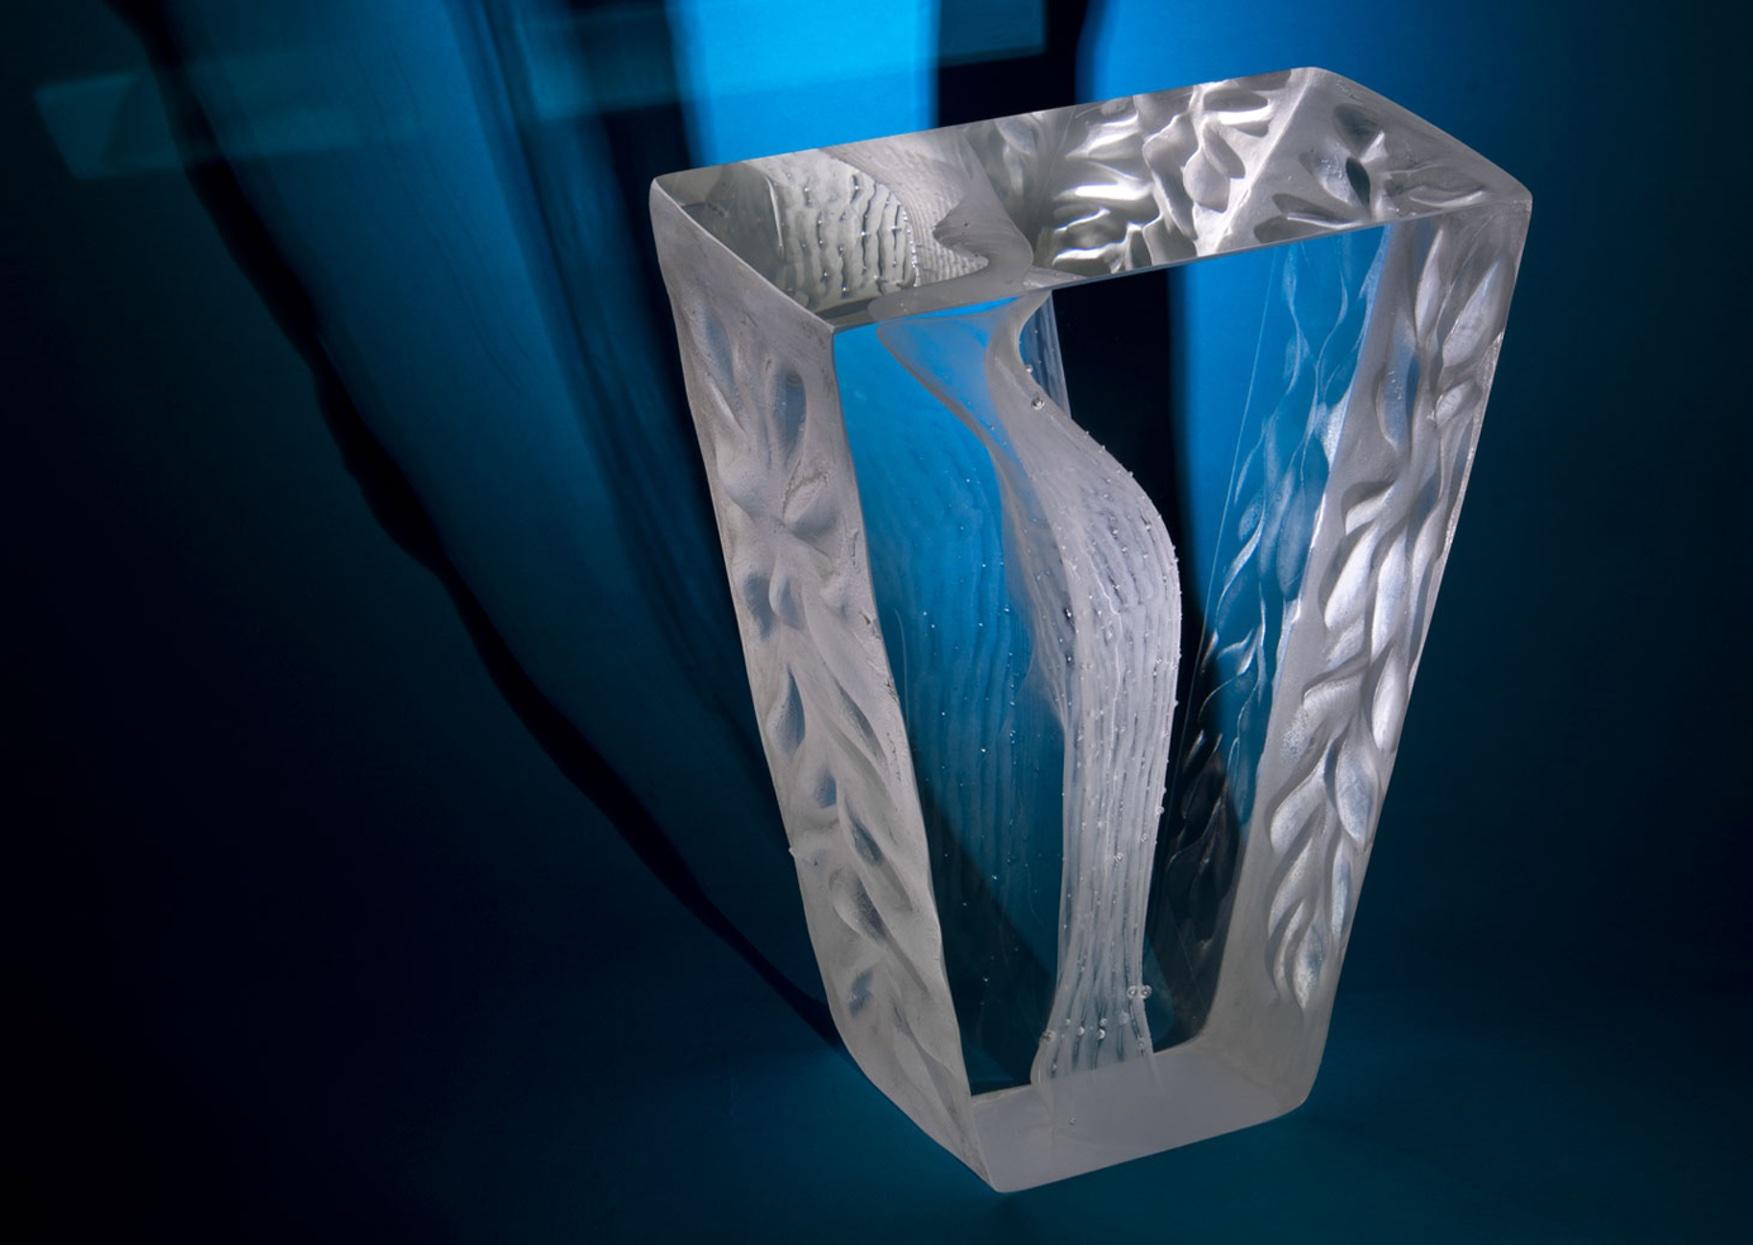 Siren glass sculpture